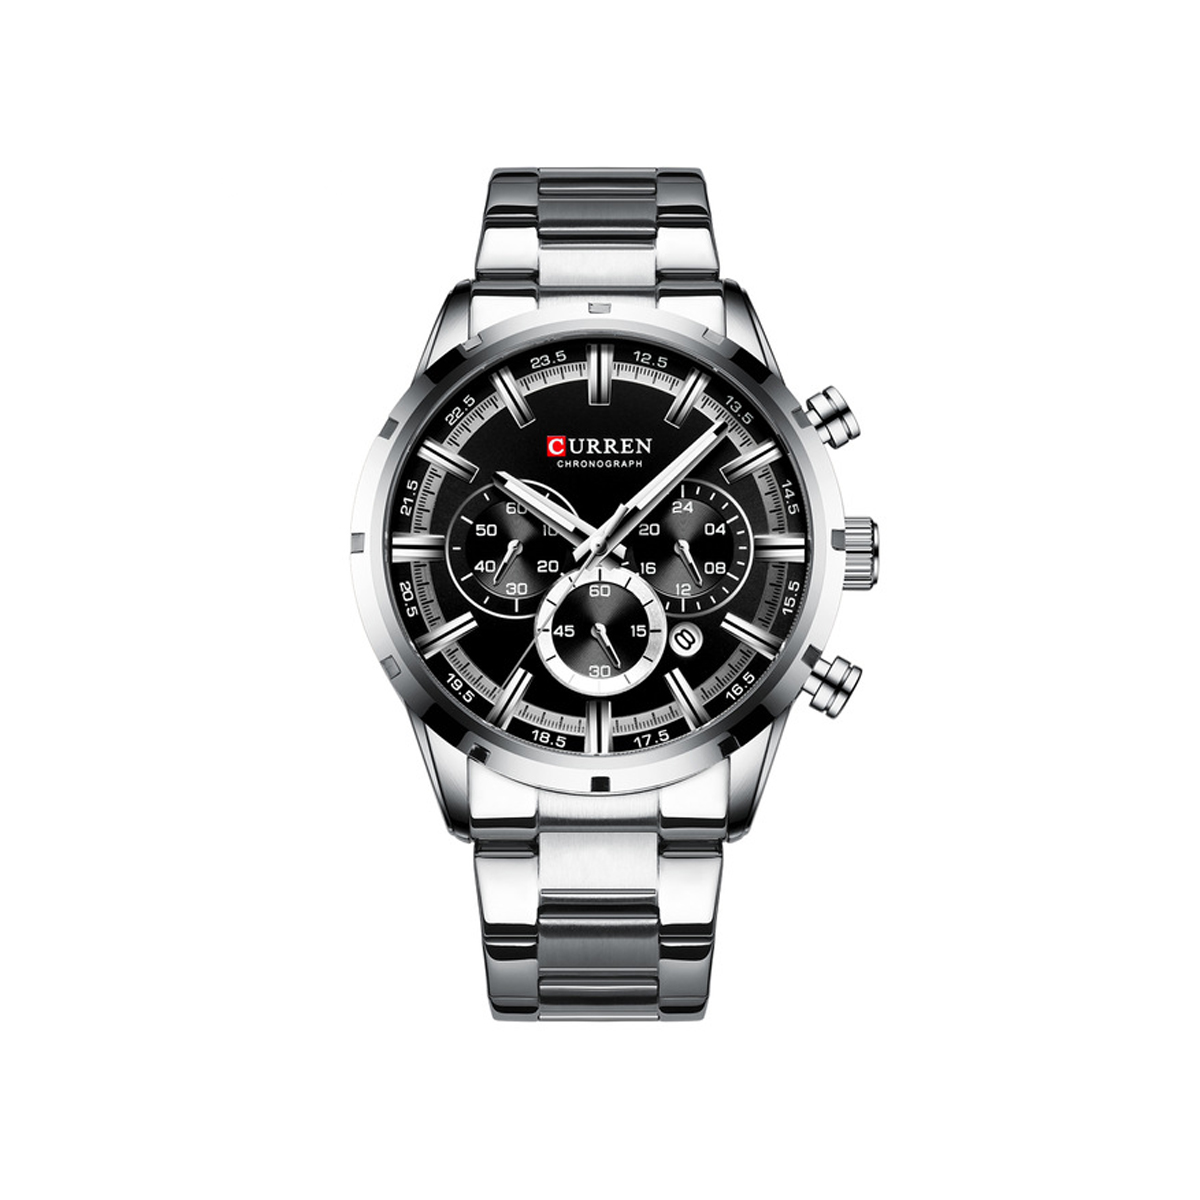 CURREN 8355 Multi-function Steel Strap Watch for Men – Silver & Black